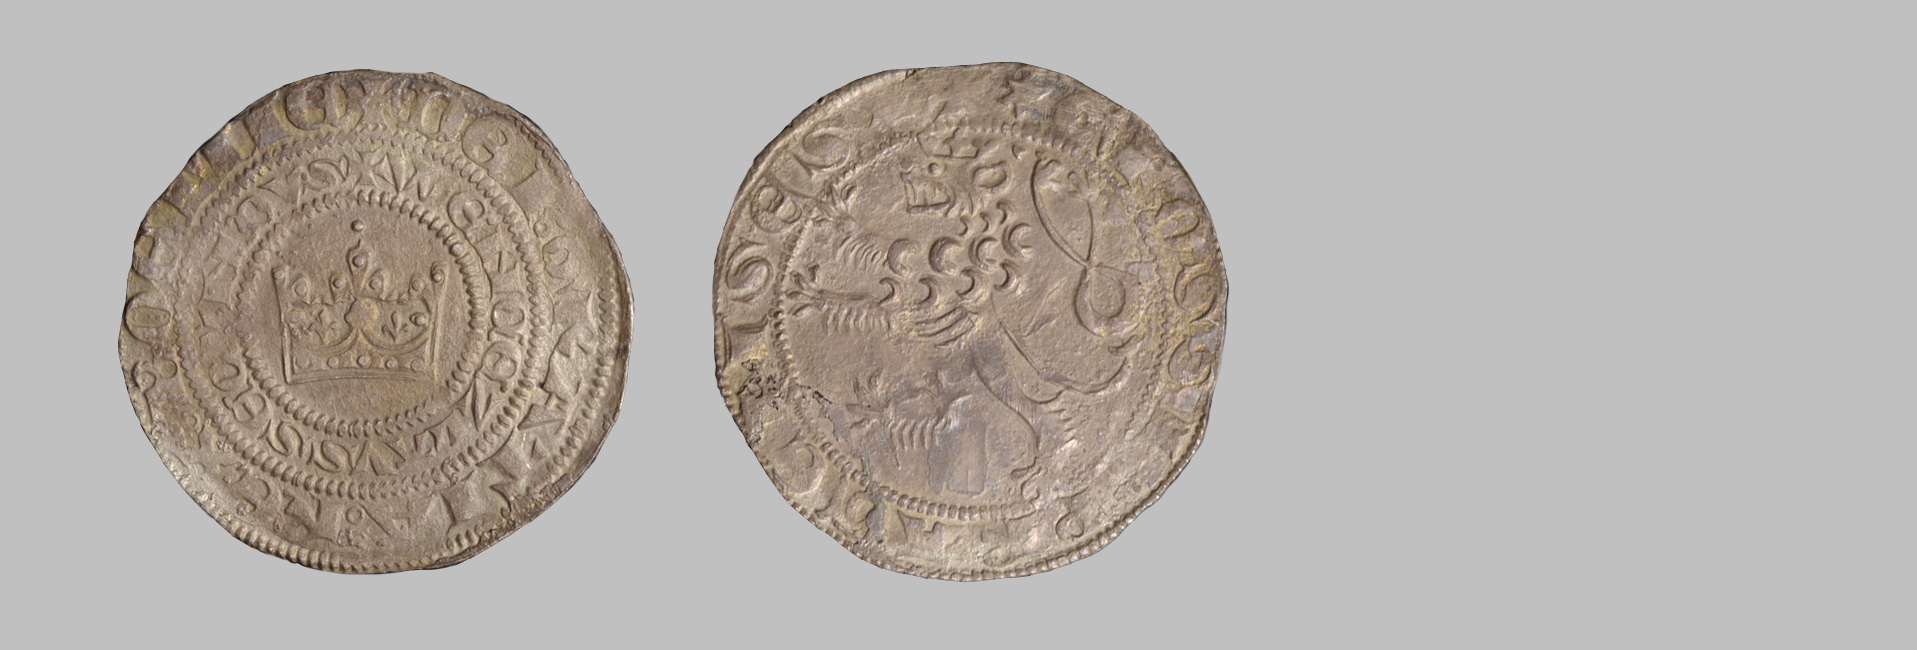 Czech kingdom, Vaclav II. (1283-1305) [Prague groschen]